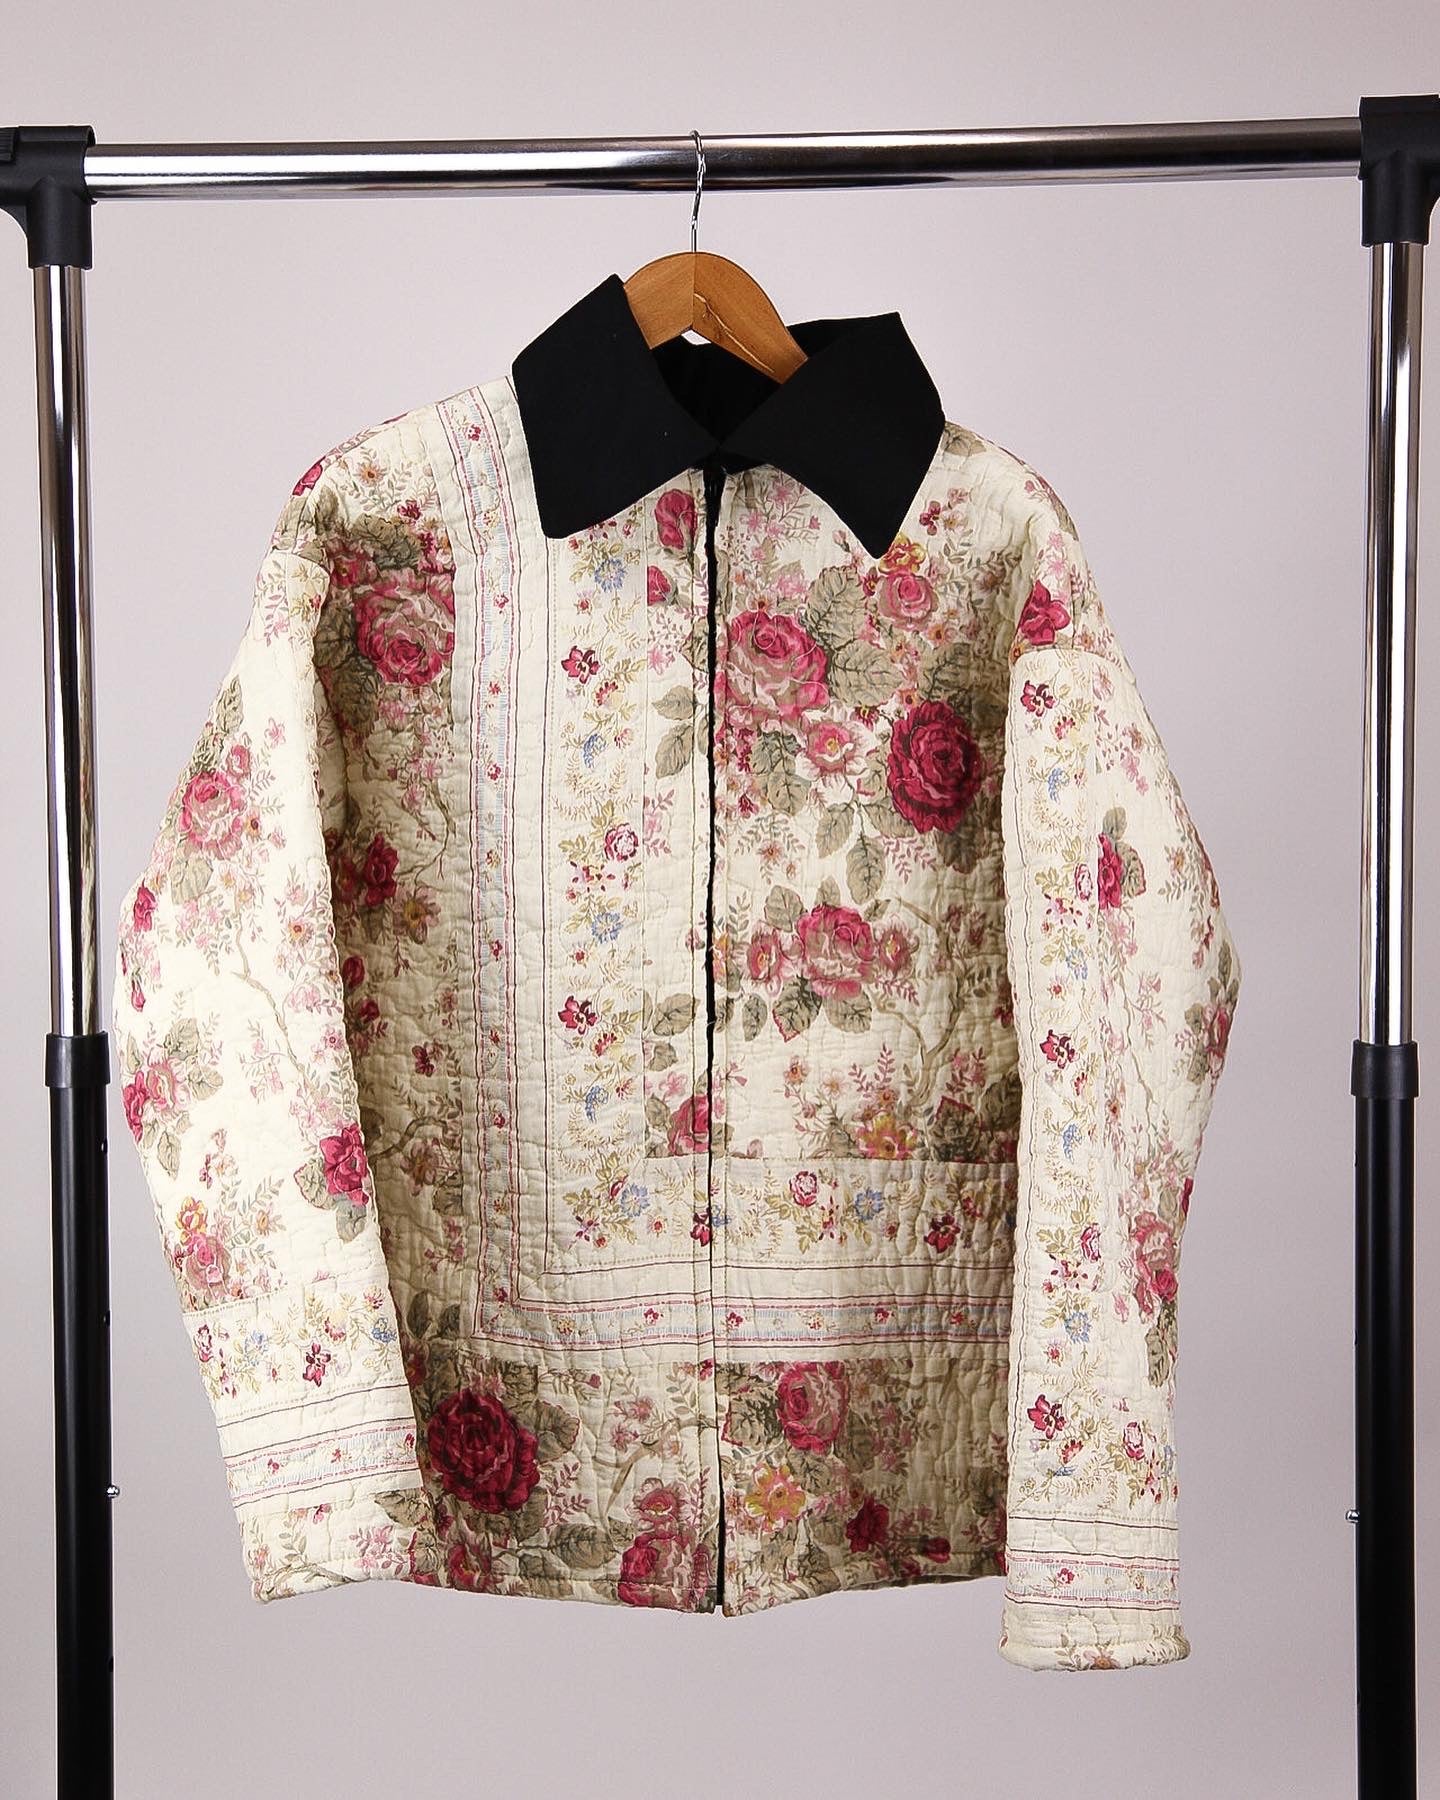 Floral jacket